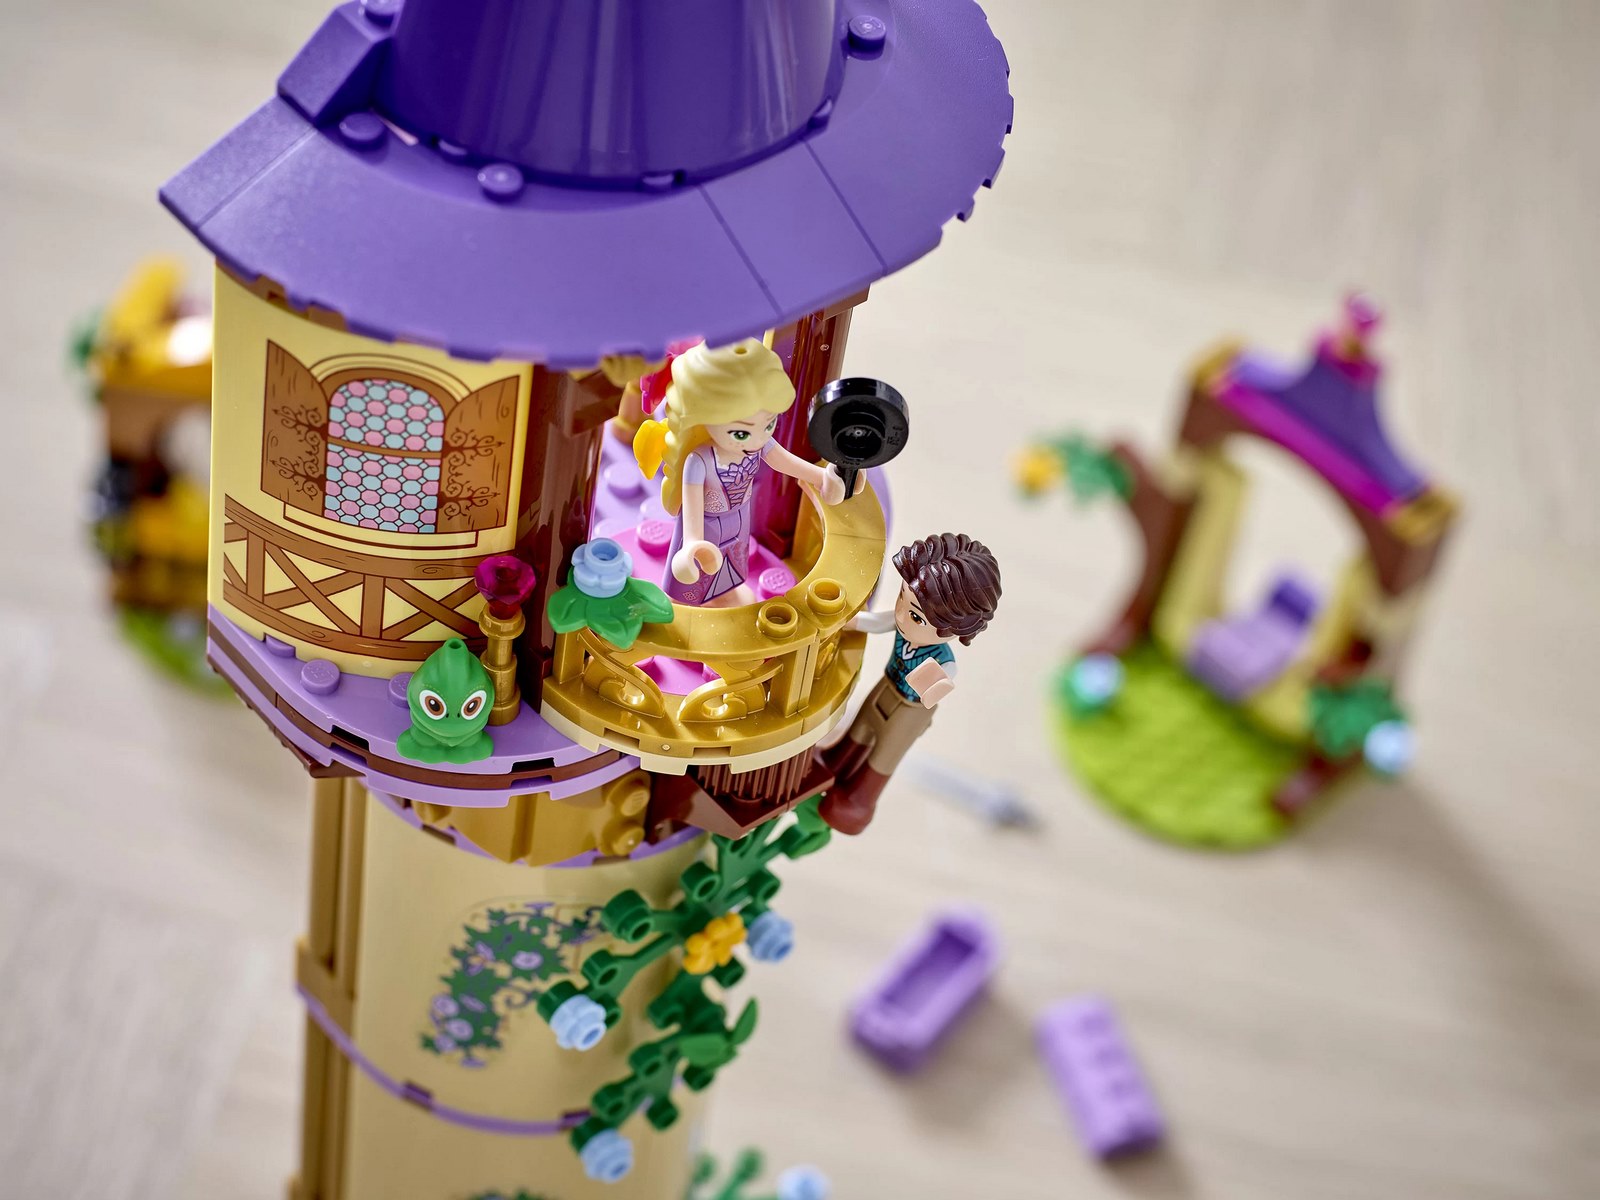 Конструктор LEGO Disney Princess «Башня Рапунцель» 43187 / 369 деталей